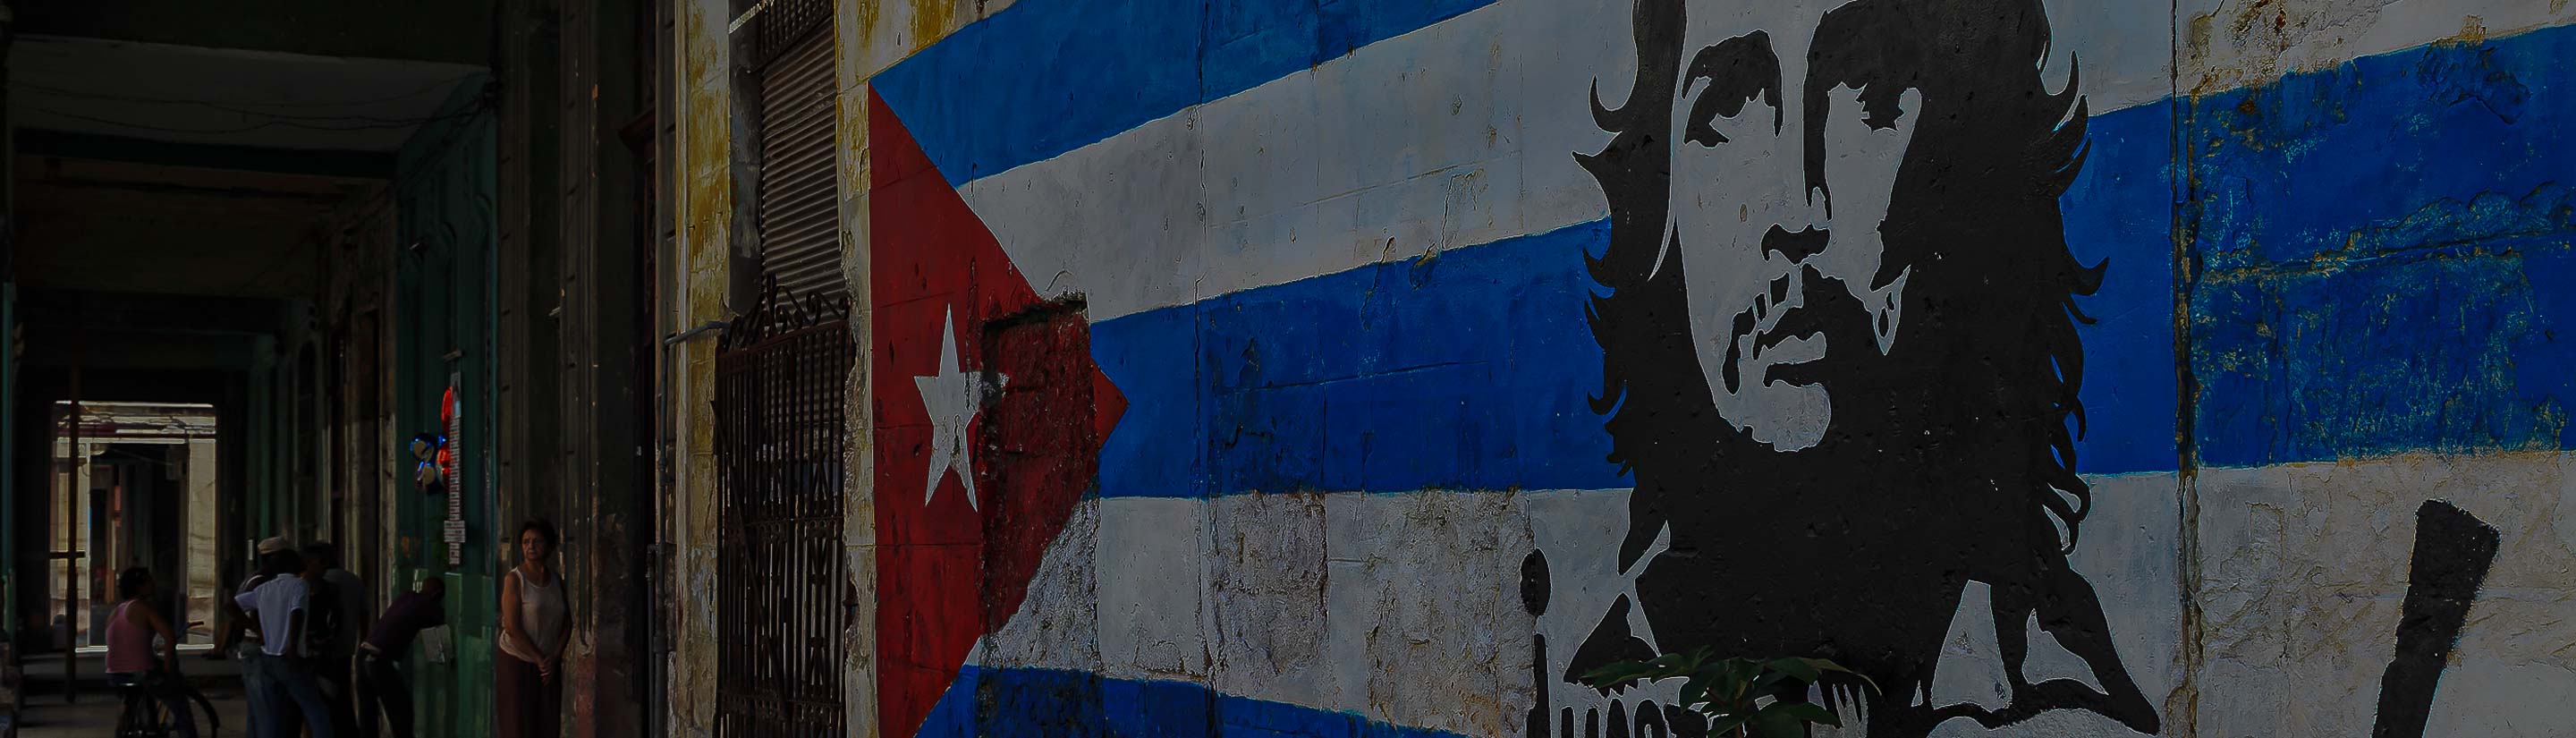 Zeichnung von Che Guevara an Wand in Havanna Kuba